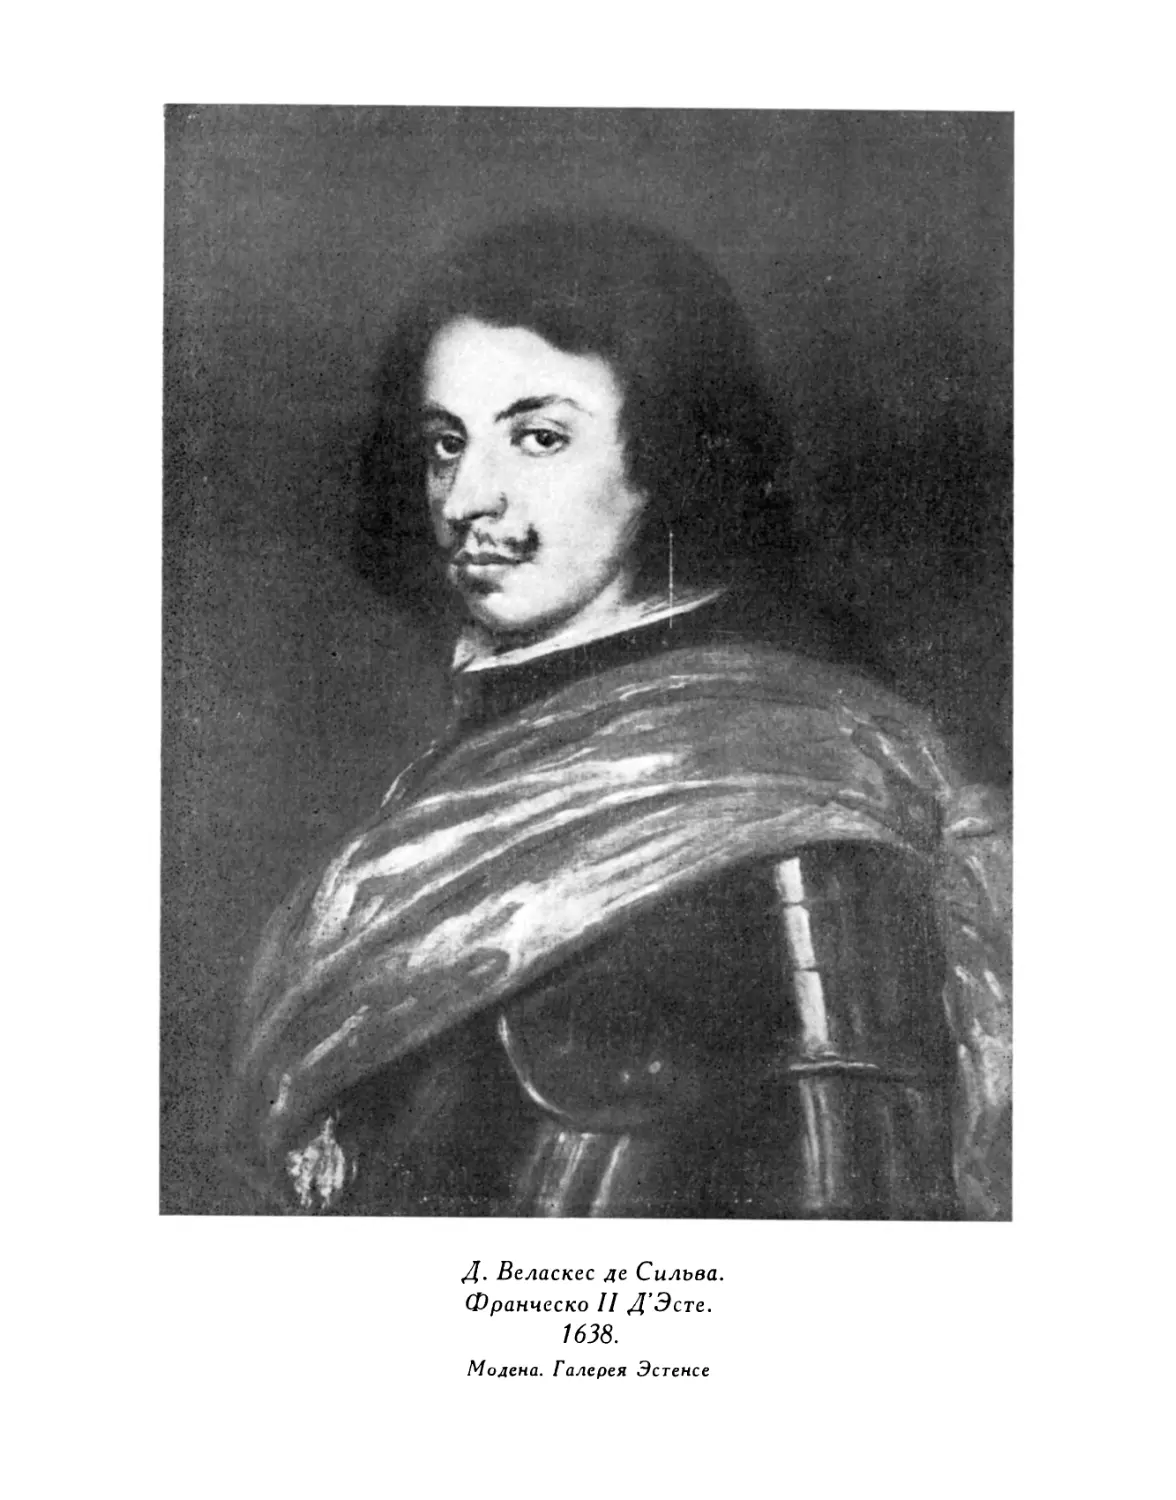 Д. Веласкес де Сильва. Карлик дон Диего де Аседо. 1644